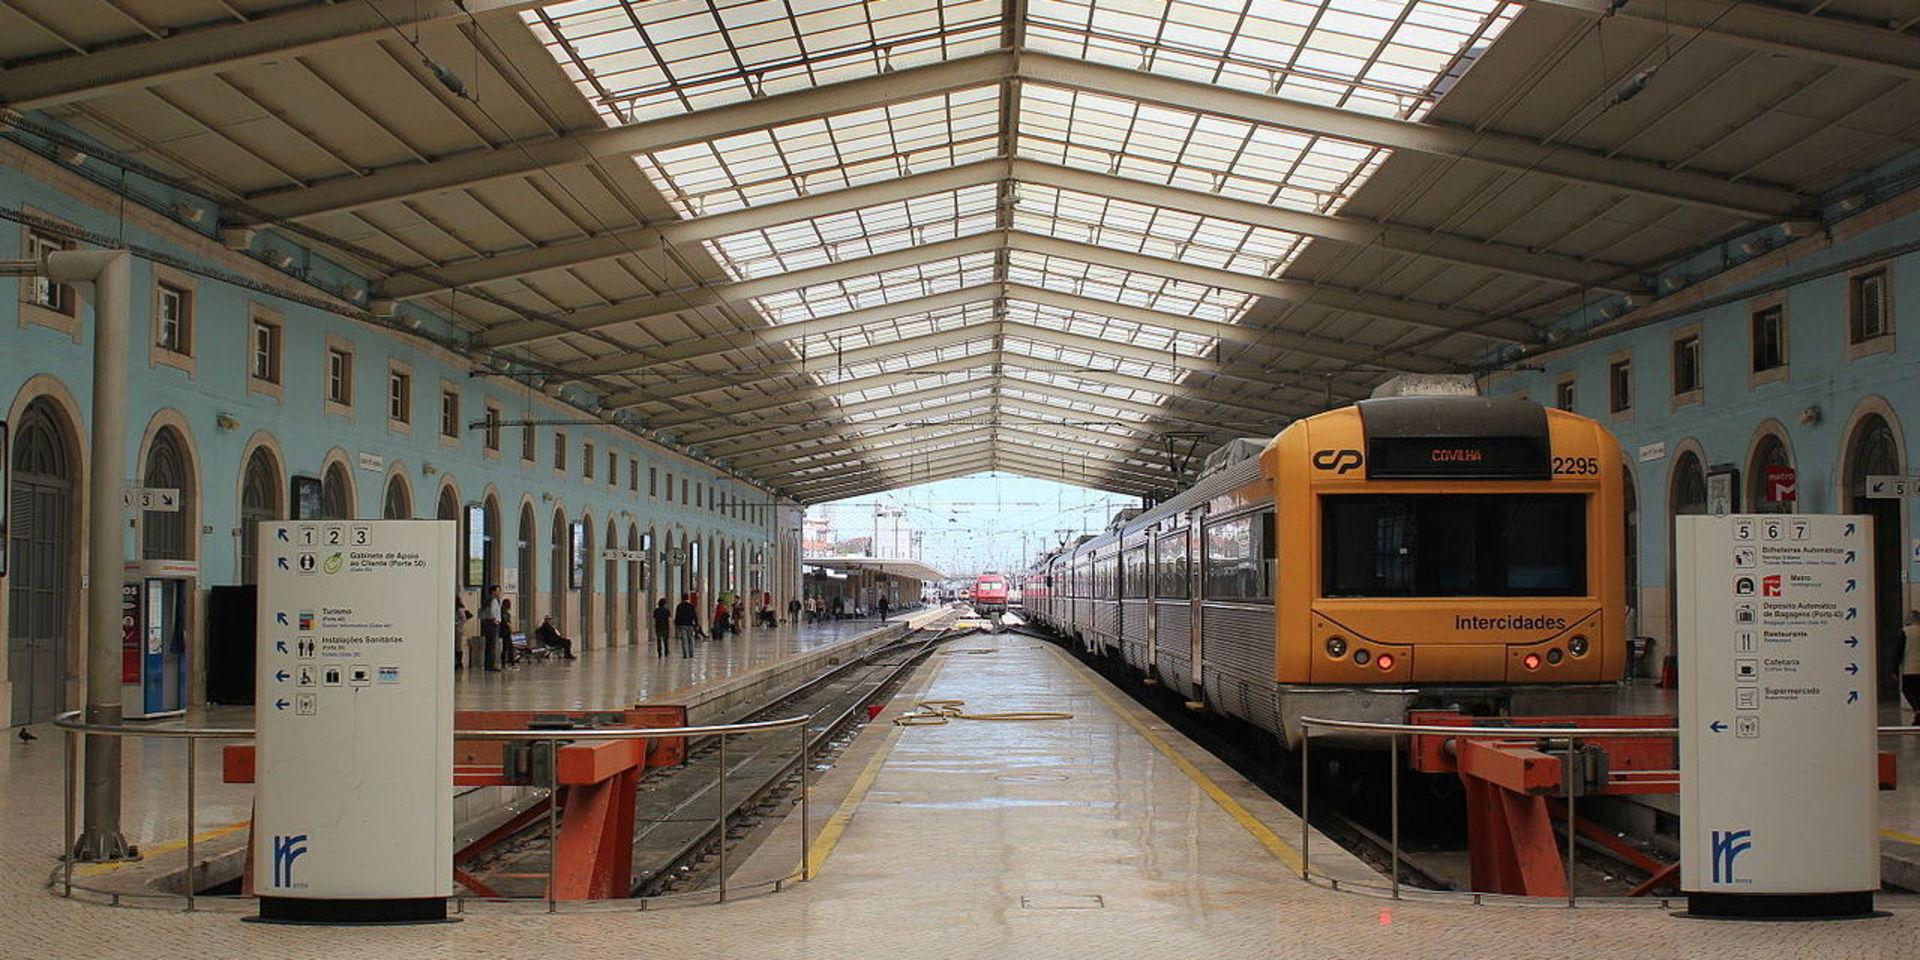 Tåg i Lissabon. Yngve Berlin har tågluffat till Portugal. Här syns Santa Appolonia-stationen, en av flera tågstationer i Lissabon. 